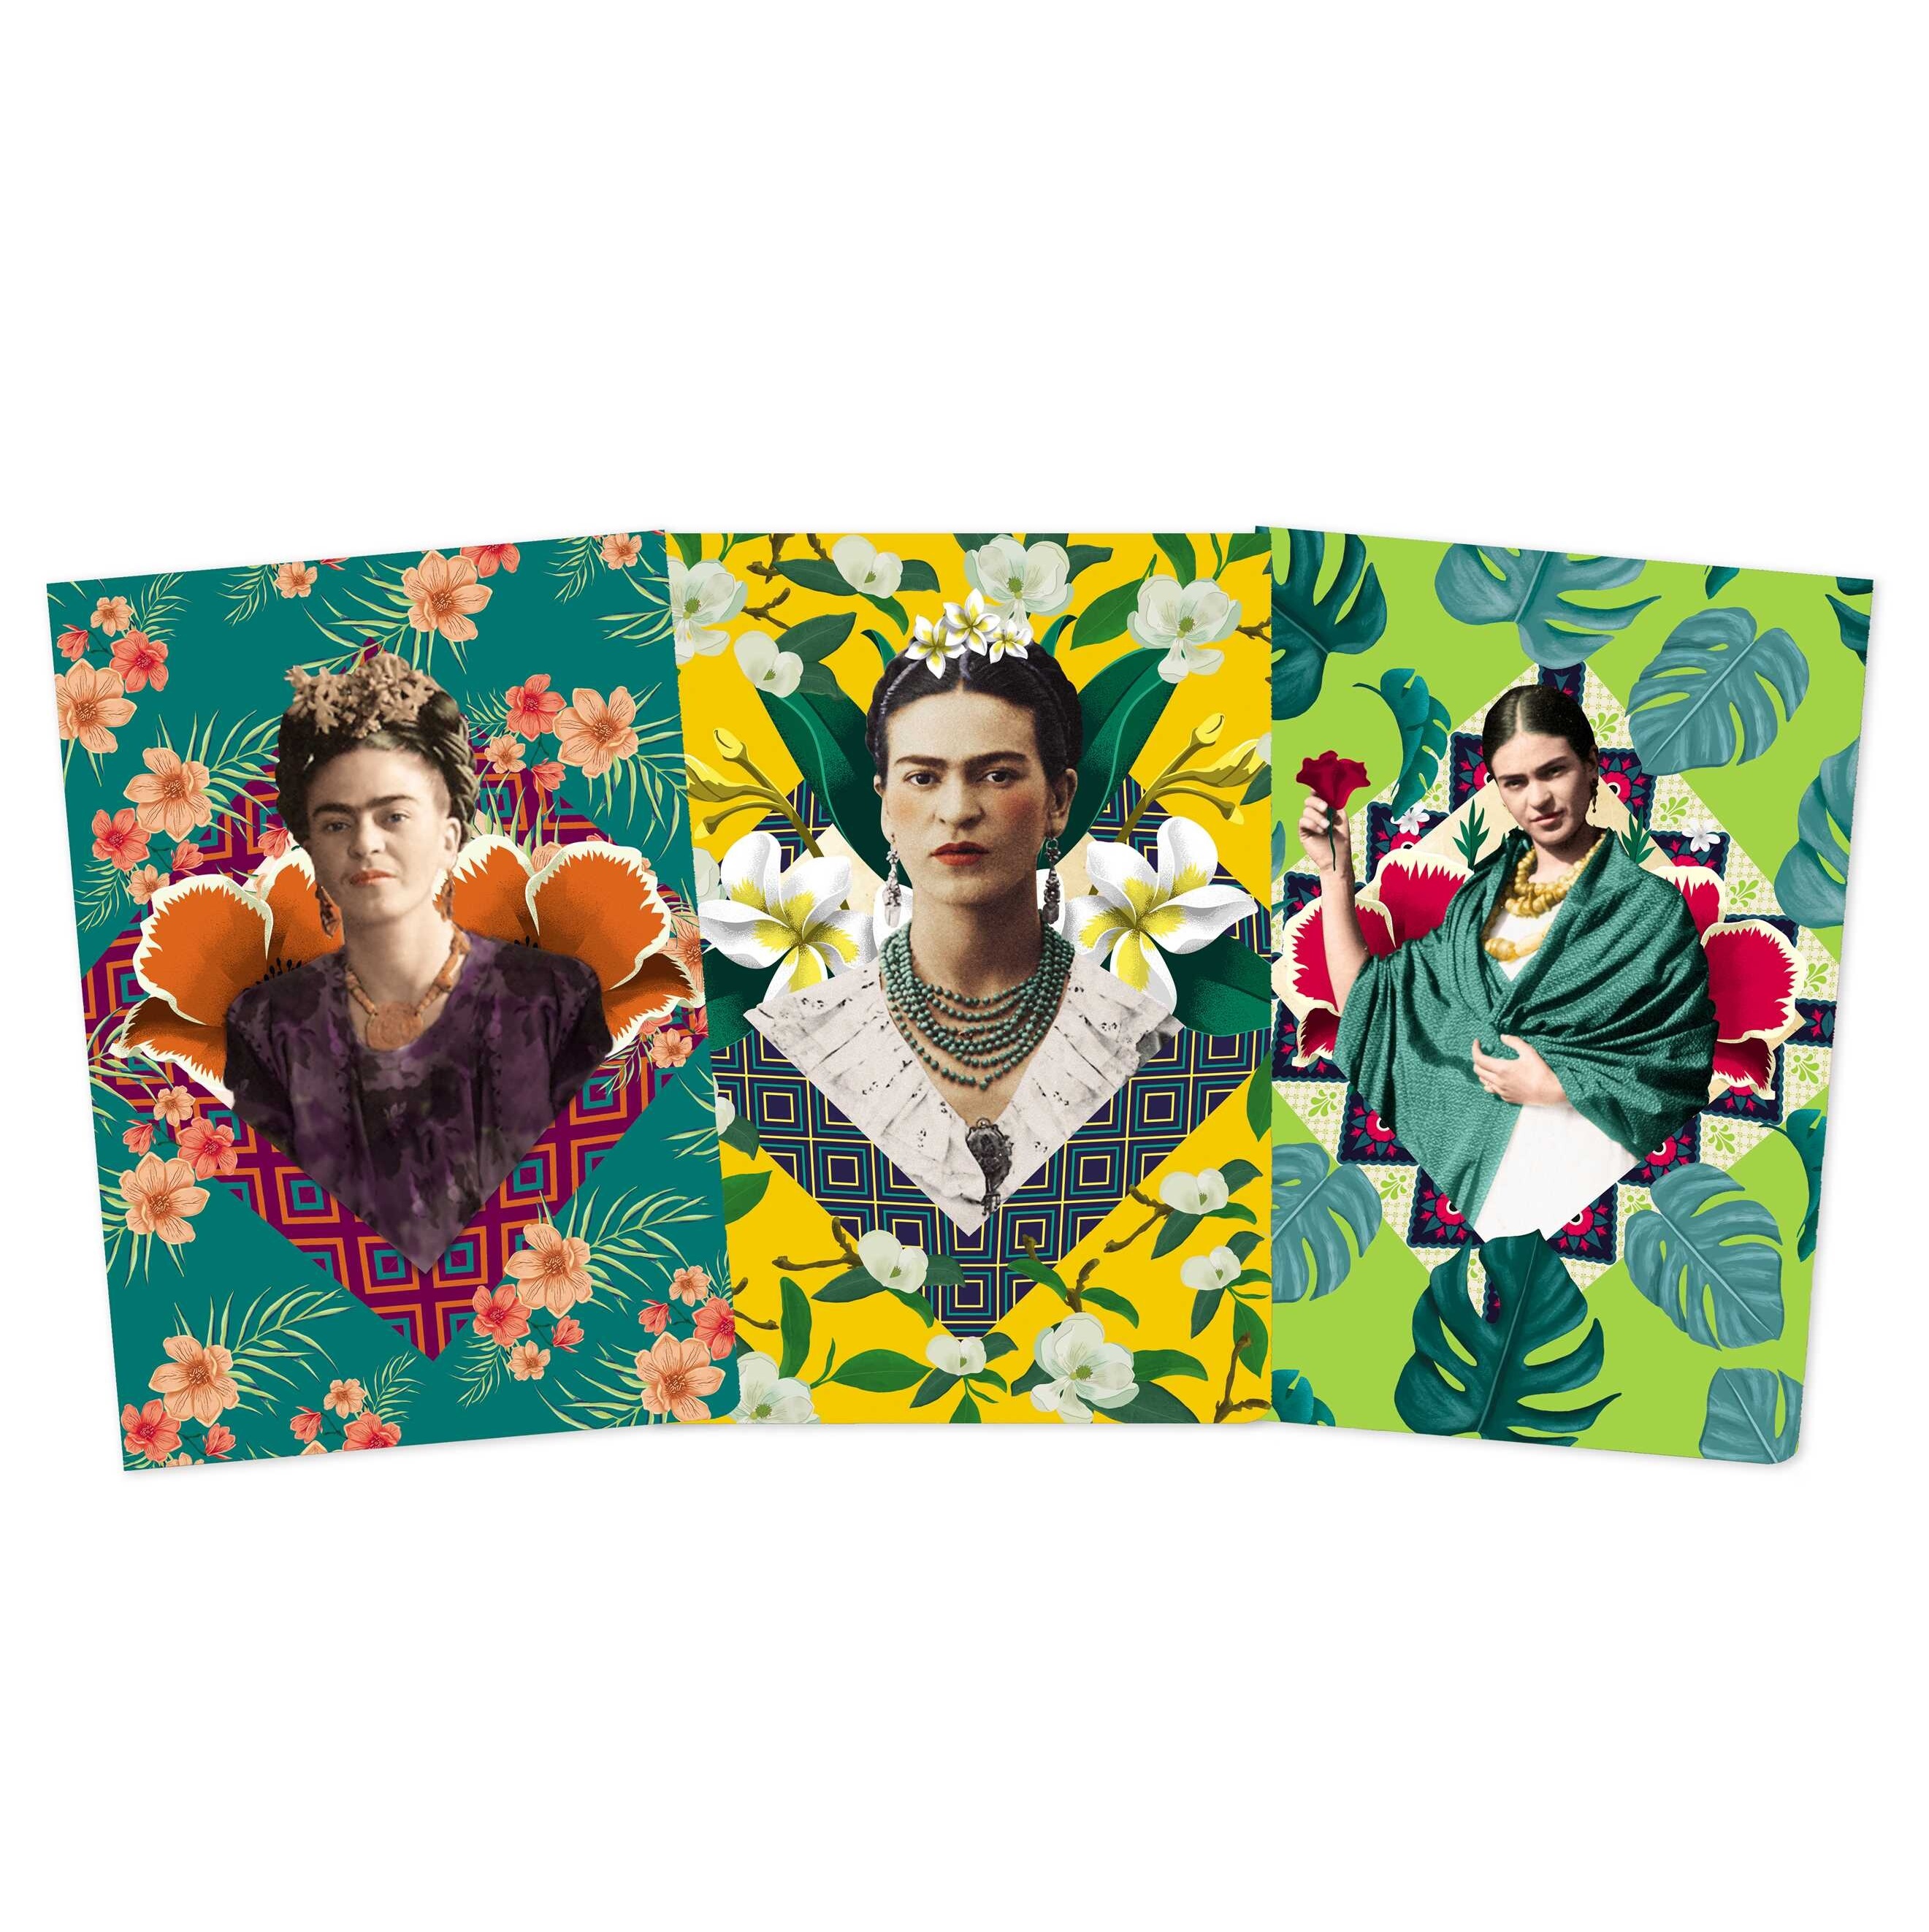 Frida Kahlo set of 3 midi notebooks 2